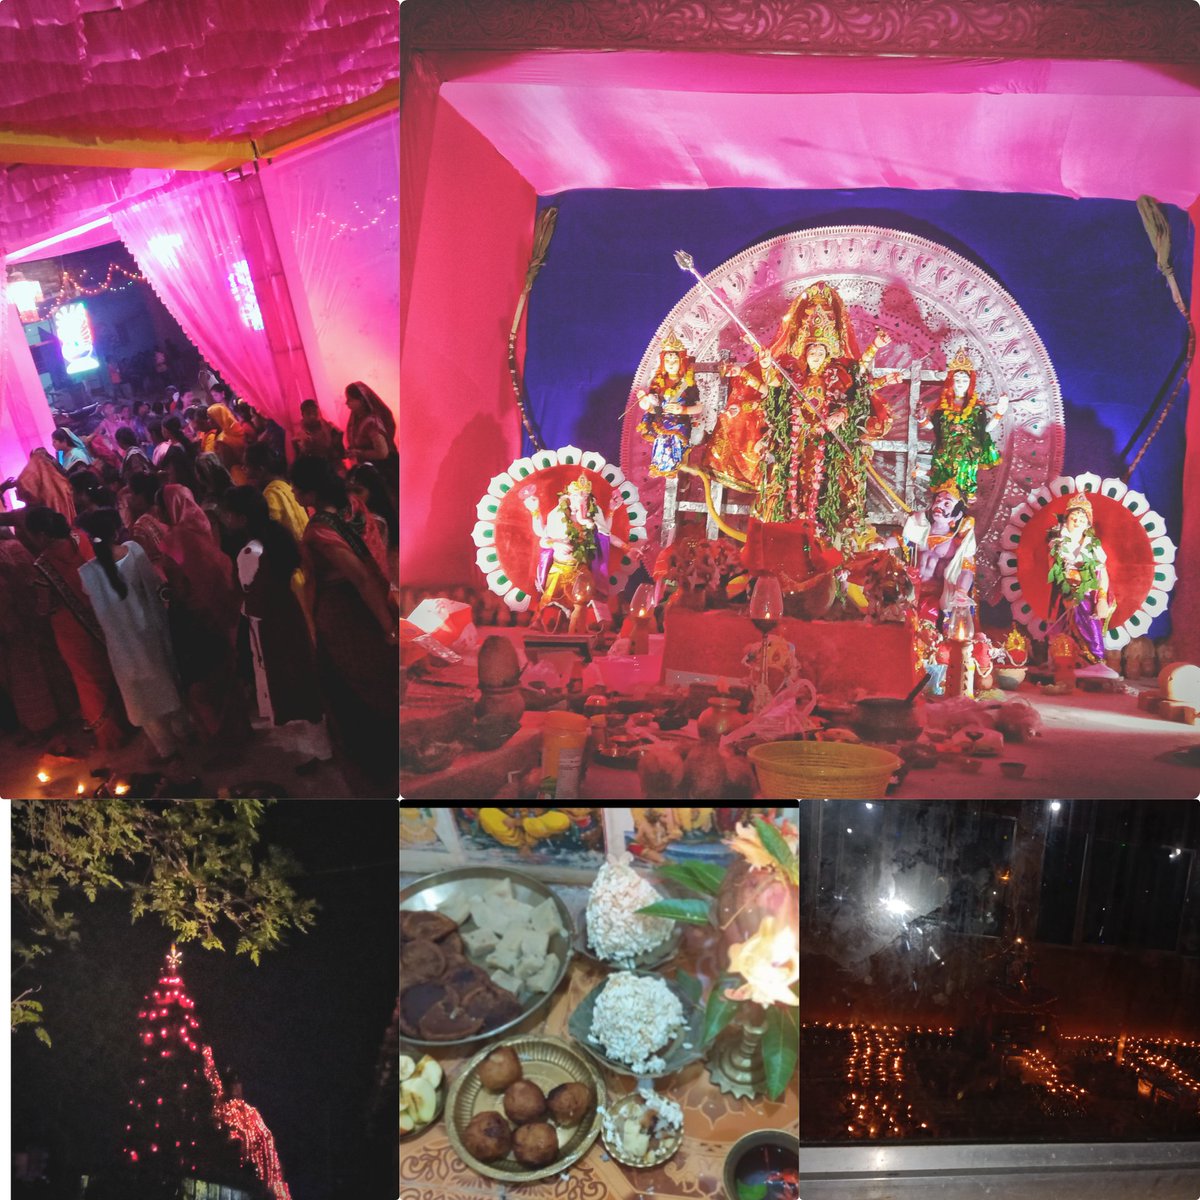 Durgapuja of my village😍😇🙏
#Navaratri2021 
#Jaymaadurga 
#Garvana #Pujavibes